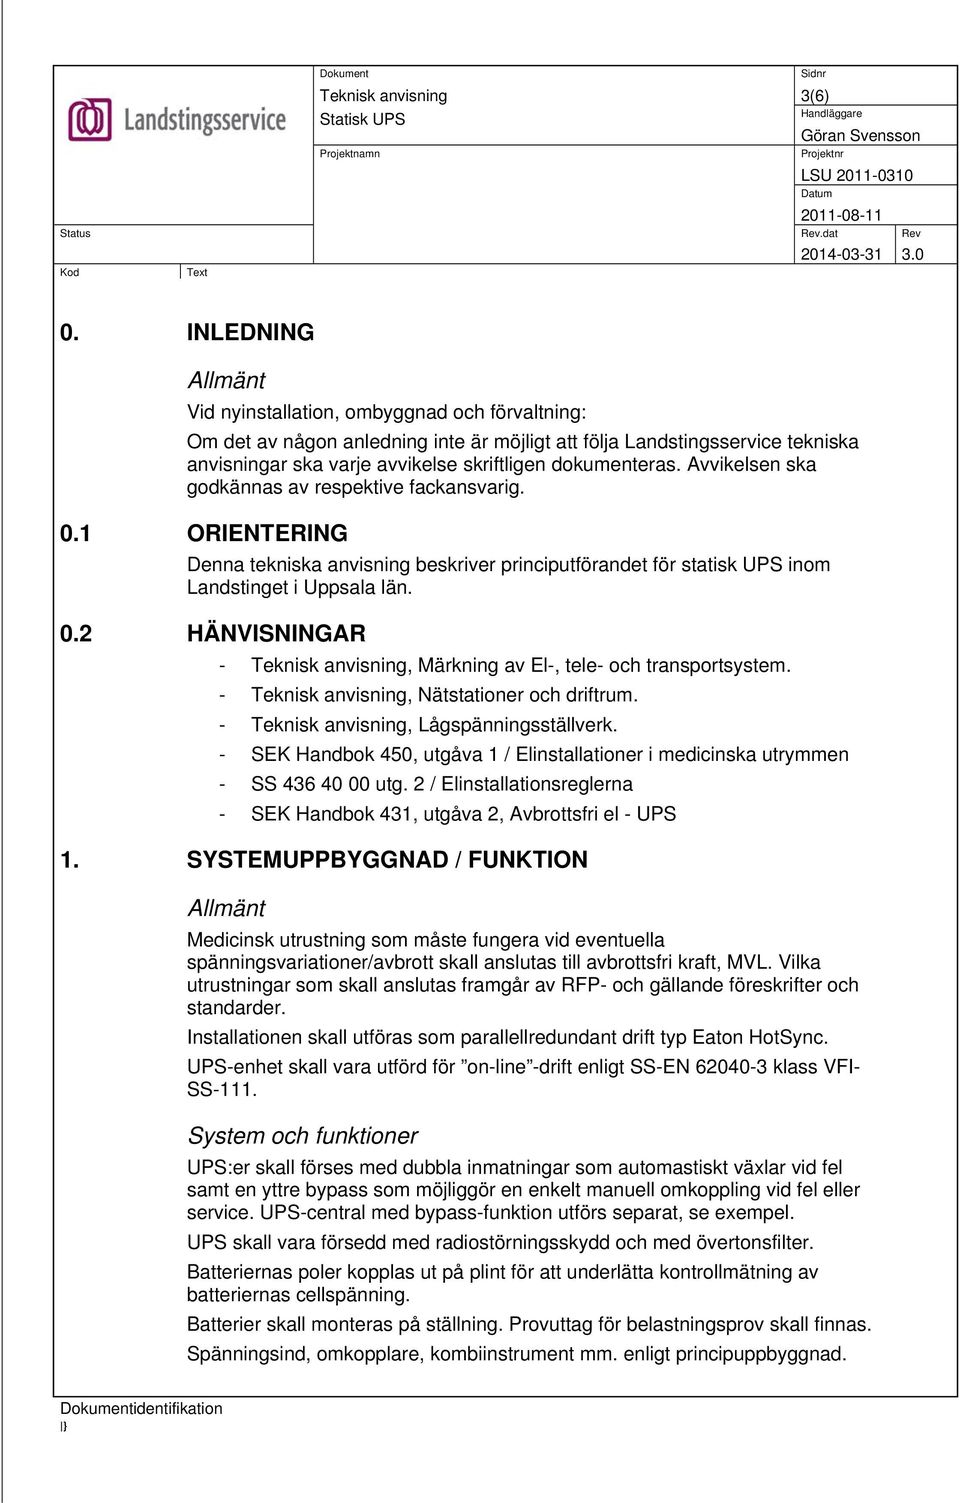 dokumenteras. Avvikelsen ska godkännas av respektive fackansvarig. 0.1 ORIENTERING Denna tekniska anvisning beskriver principutförandet för statisk UPS inom Landstinget i Uppsala län. 0.2 HÄNVISNINGAR -, Märkning av El-, tele- och transportsystem.